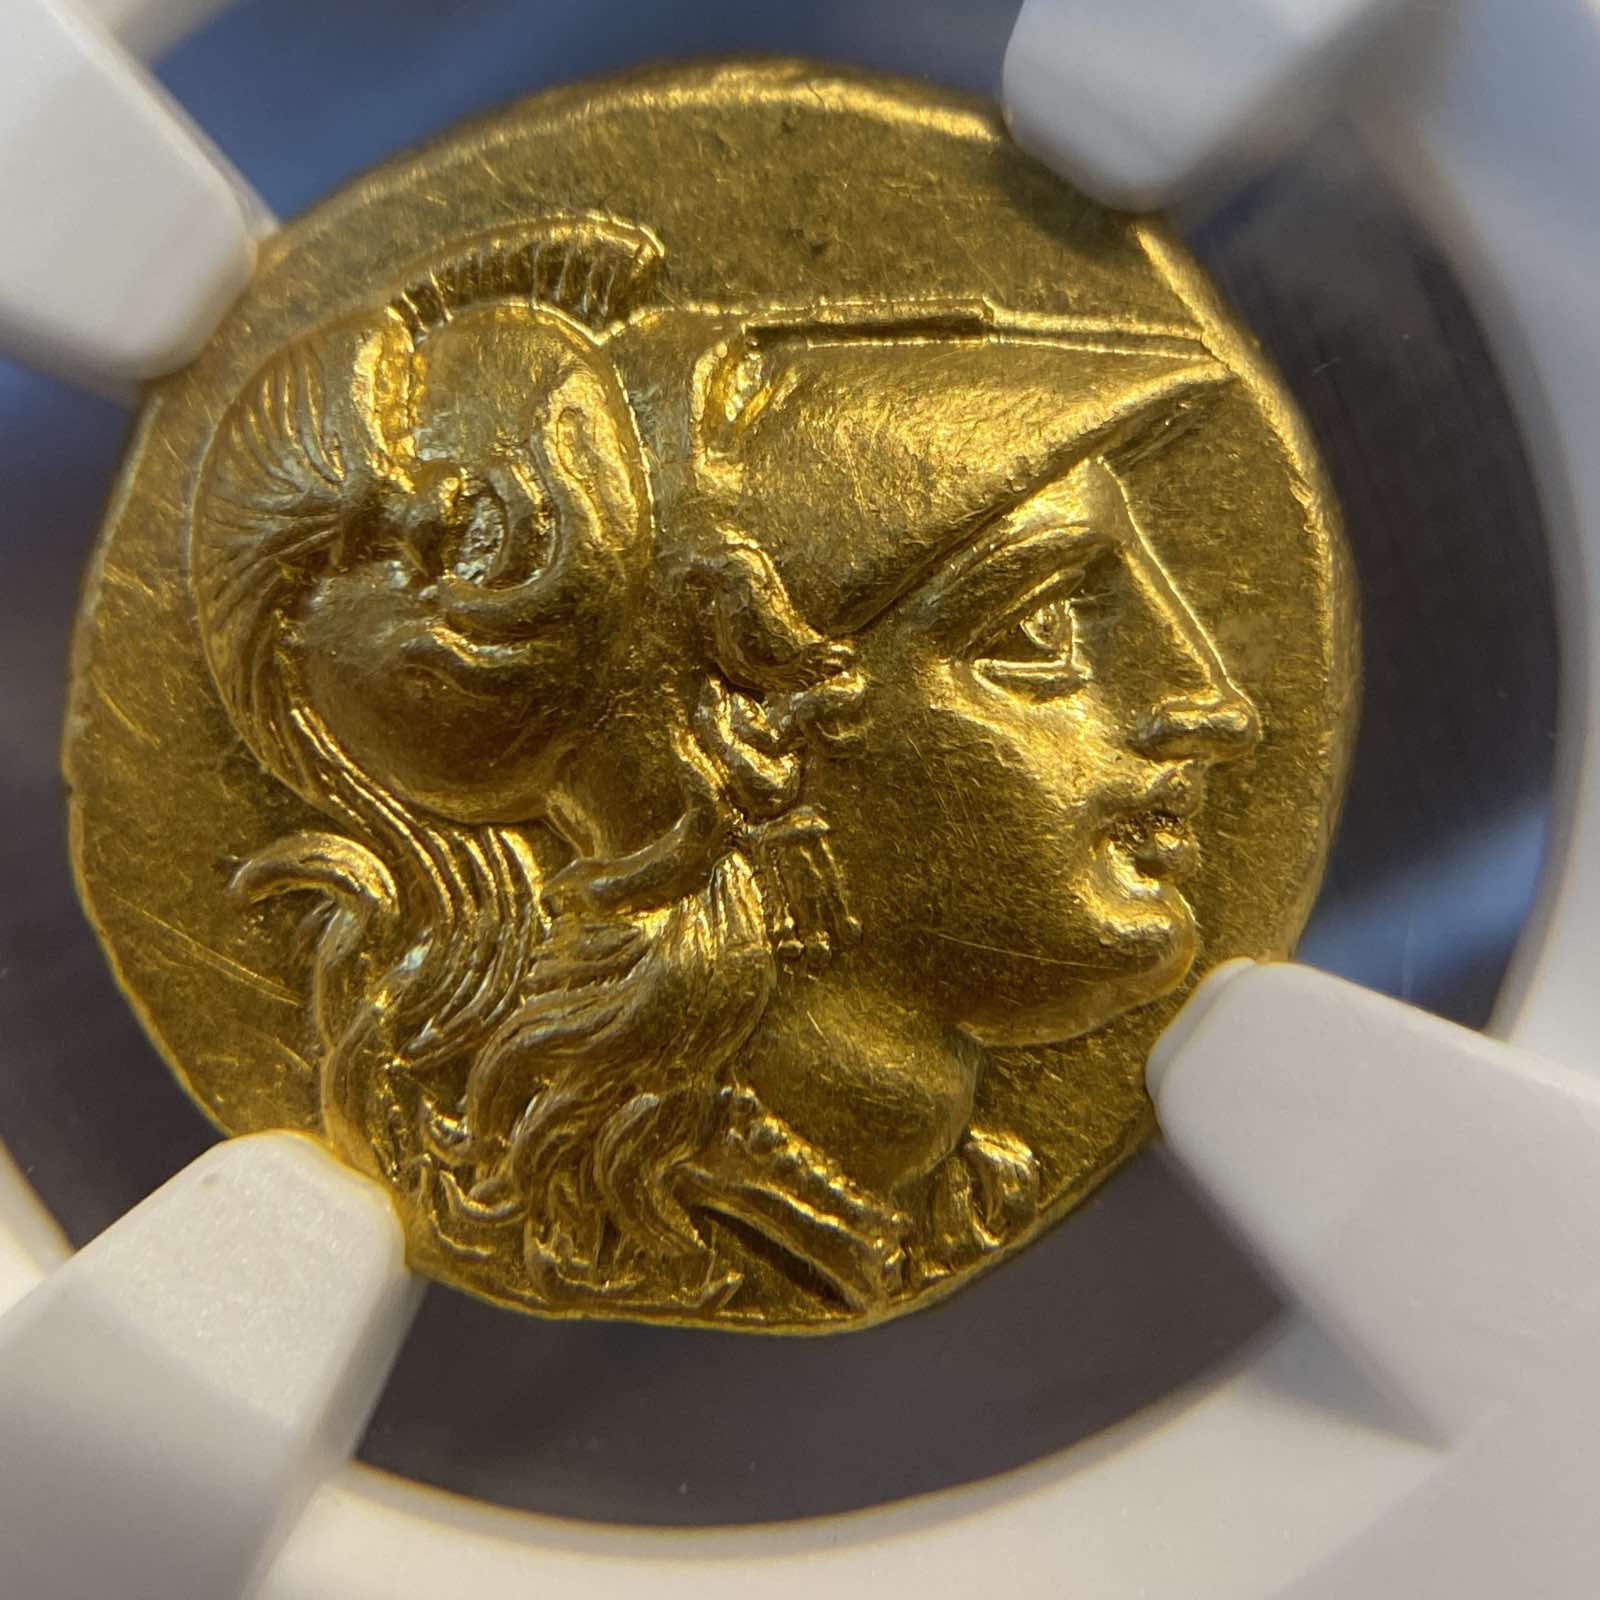 古代ギリシャ マケドニア王国 テトラドラクマ金貨(8.53g) c. 336-323